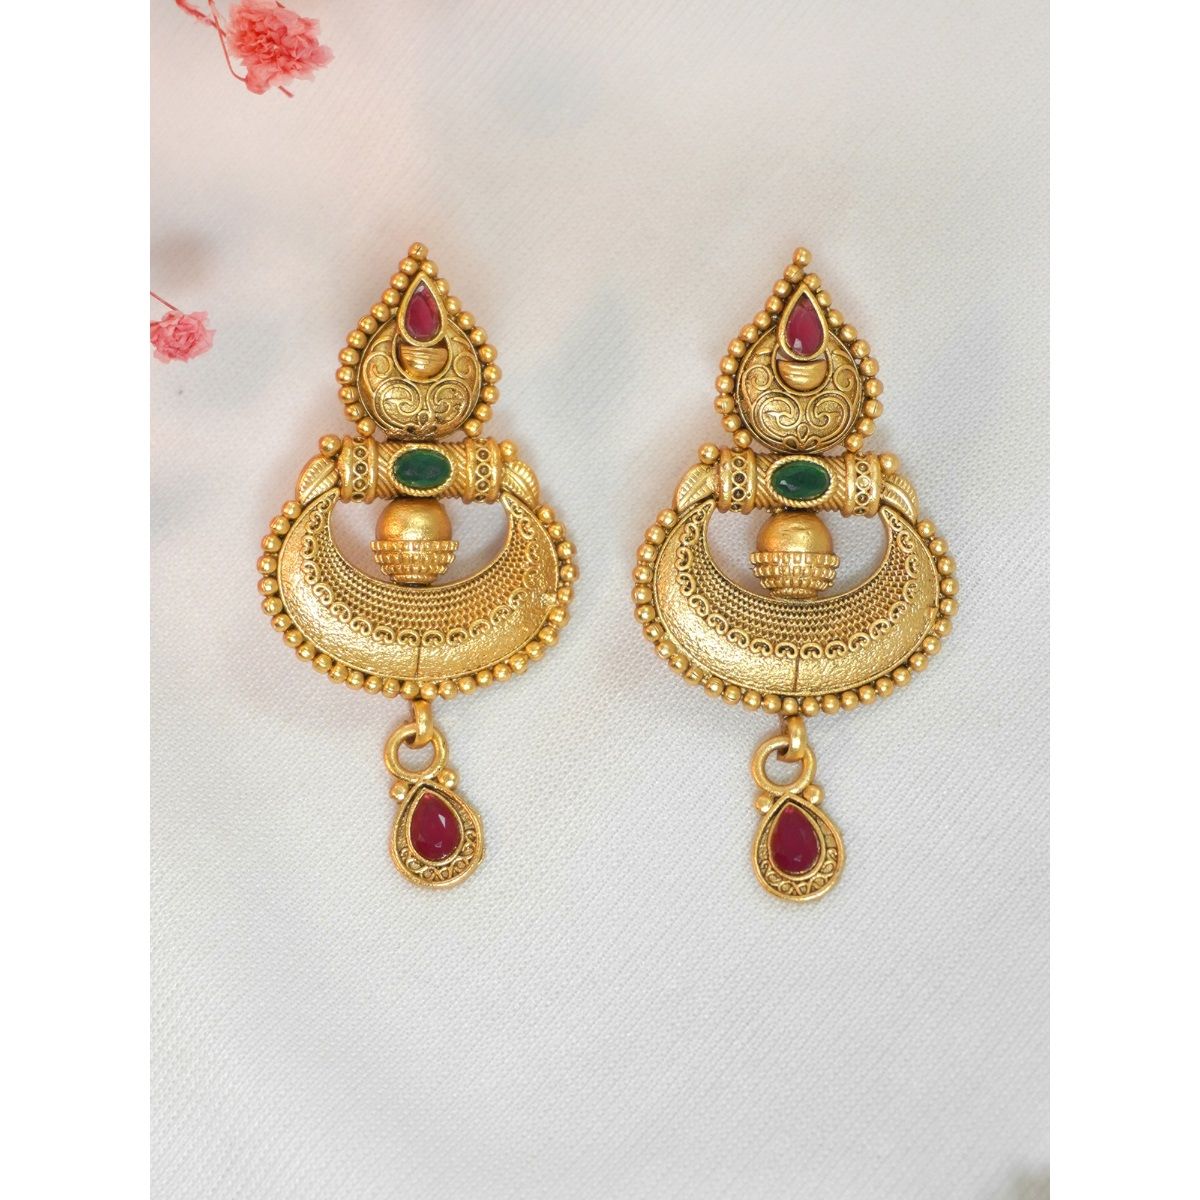 Buy Shining Jewel Traditional Gold Designer Bridal Jhumki Earrings  SJ1864 at Amazonin